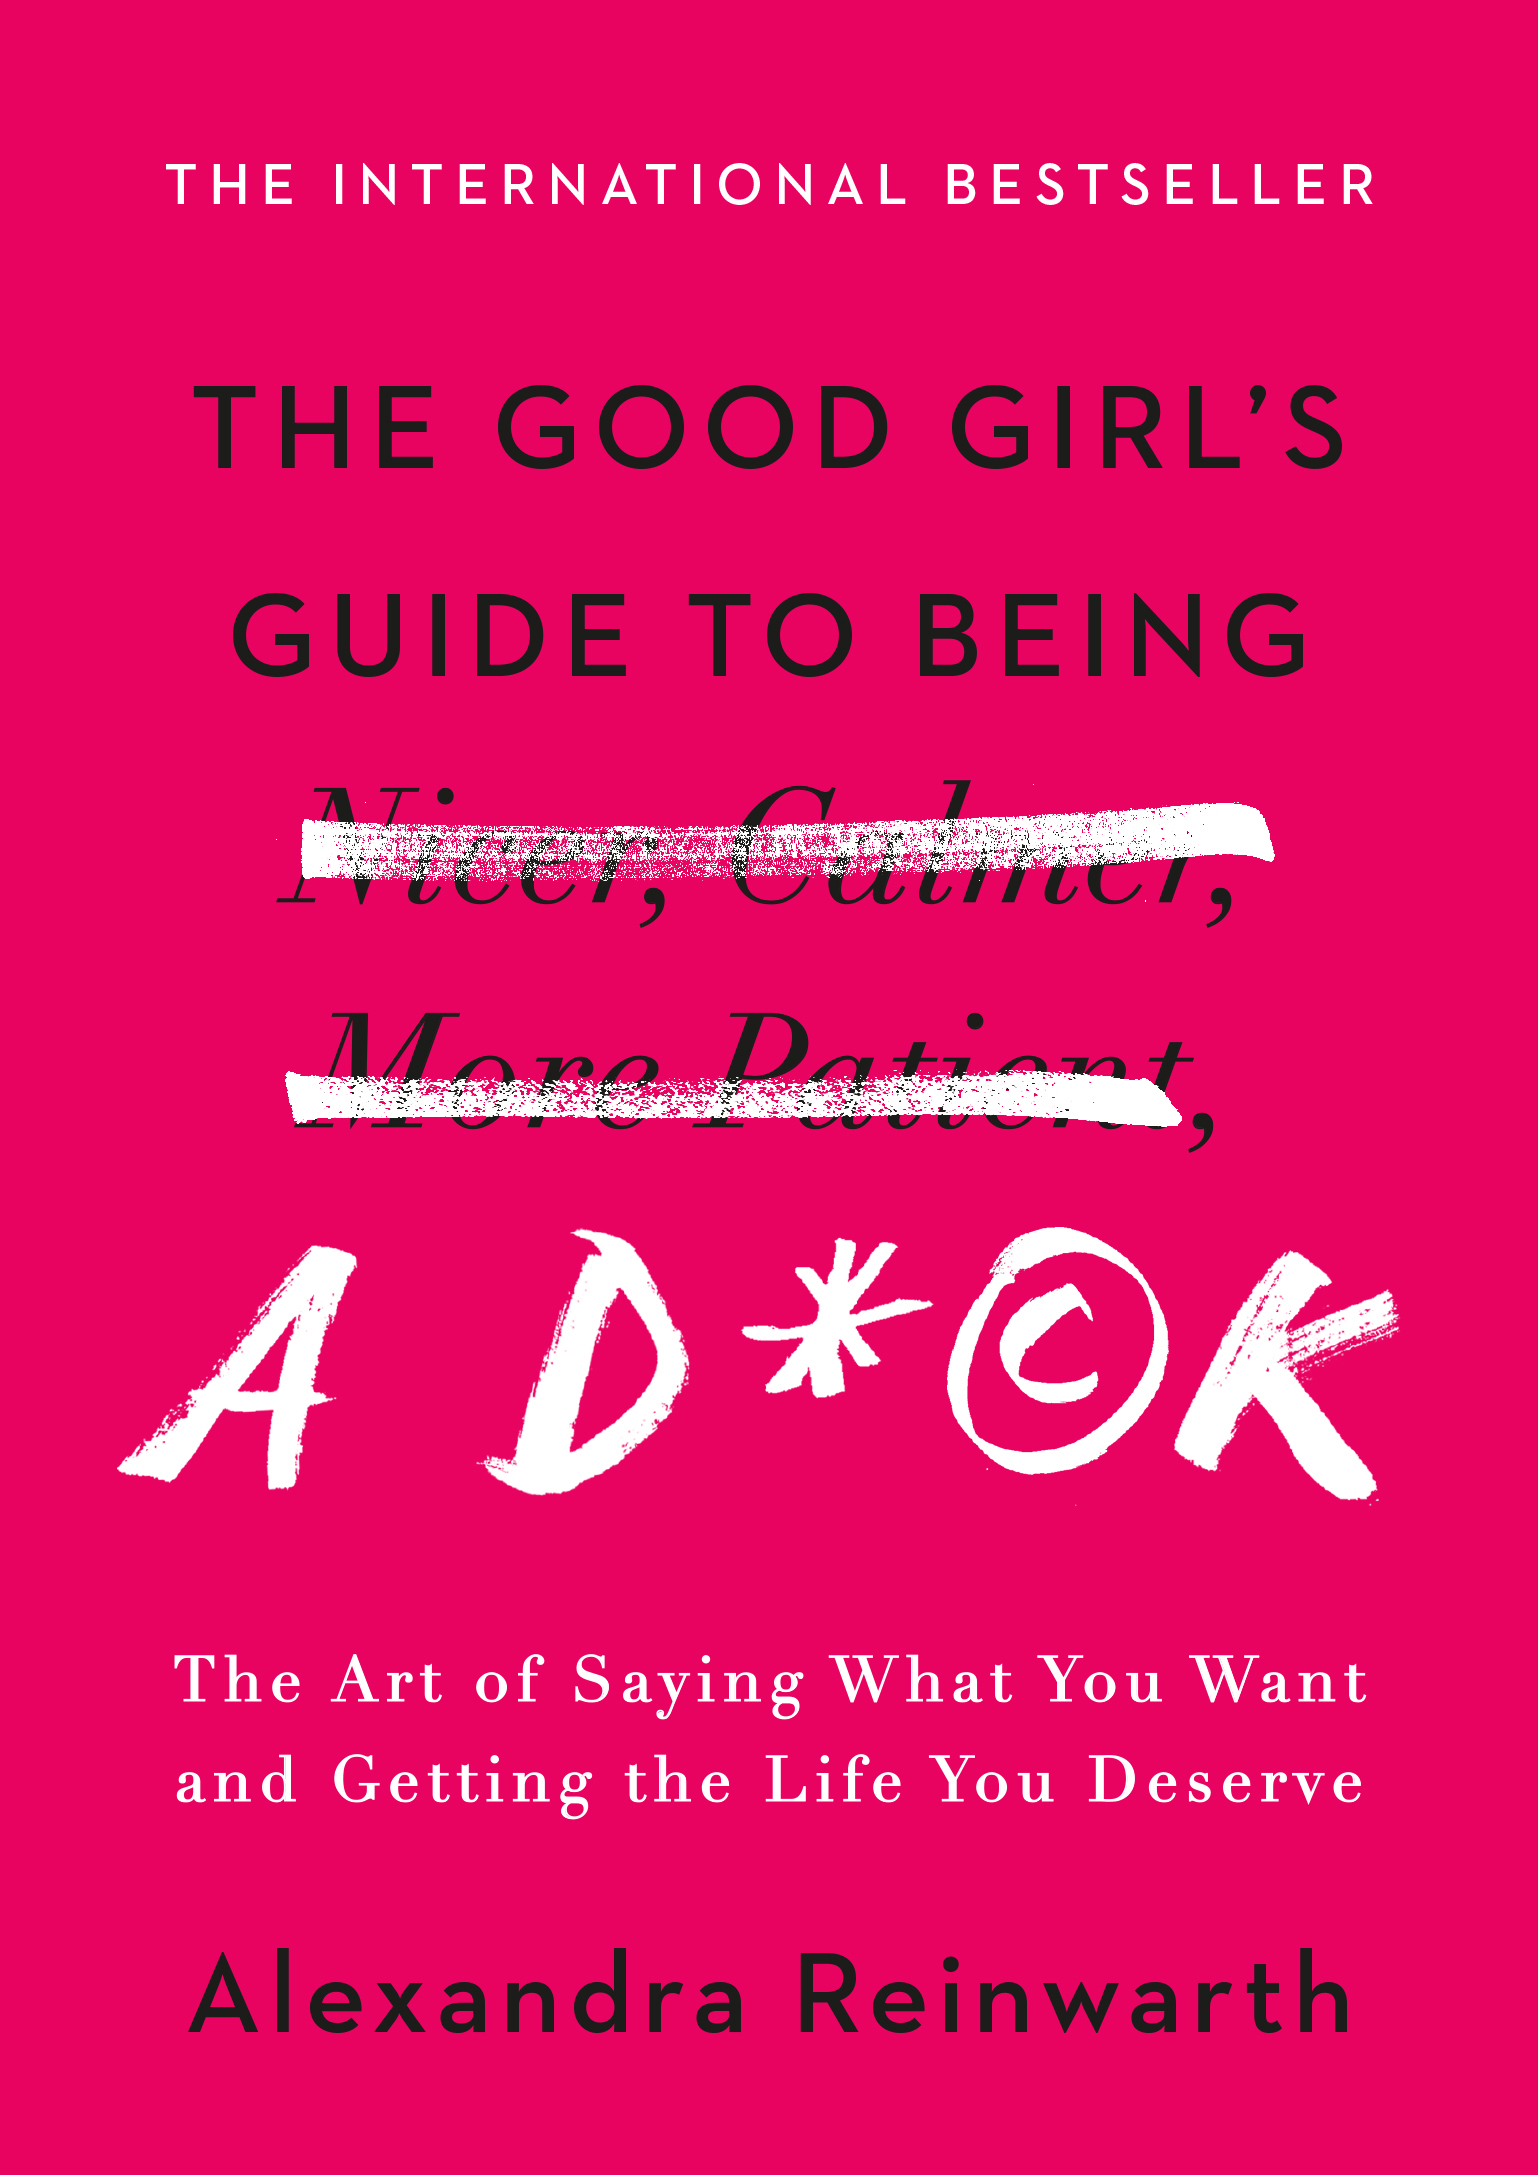 Good Girls Book Series